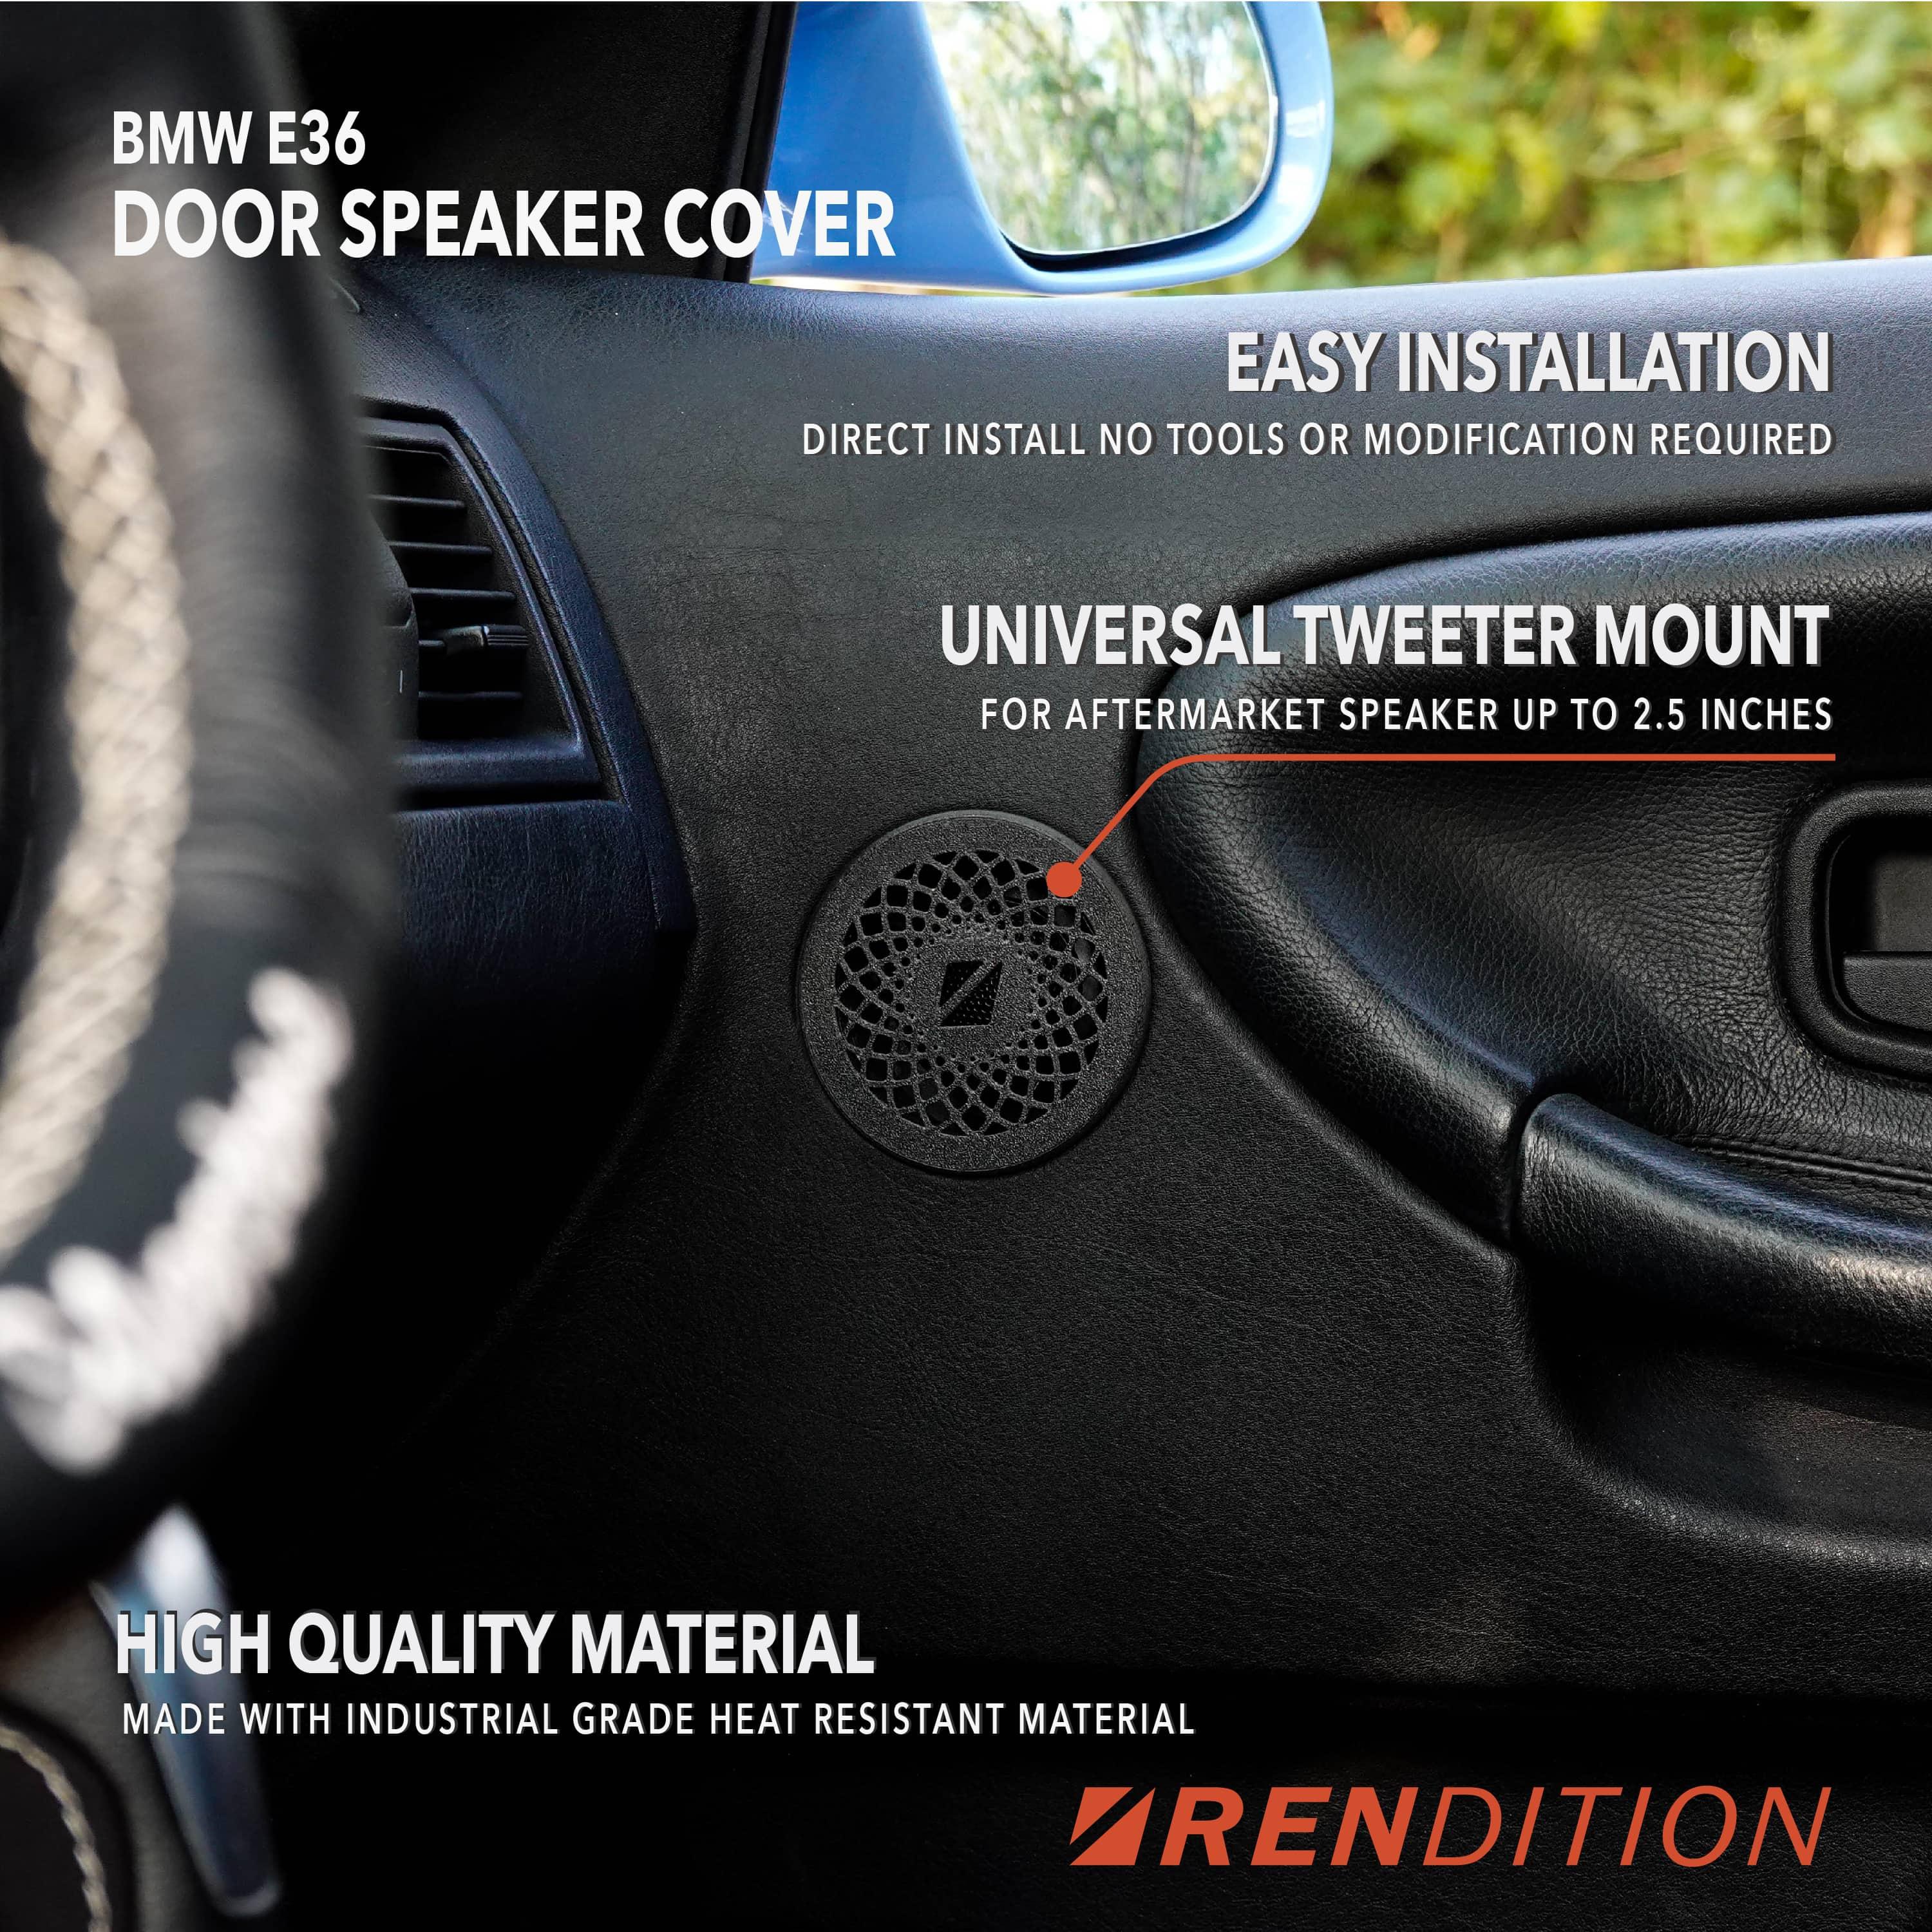 BMW E36 DOOR SPEAKER COVER / TWEETER COVER / TWEETER REPLACEMENT ASSEMBLY - K2 Industries